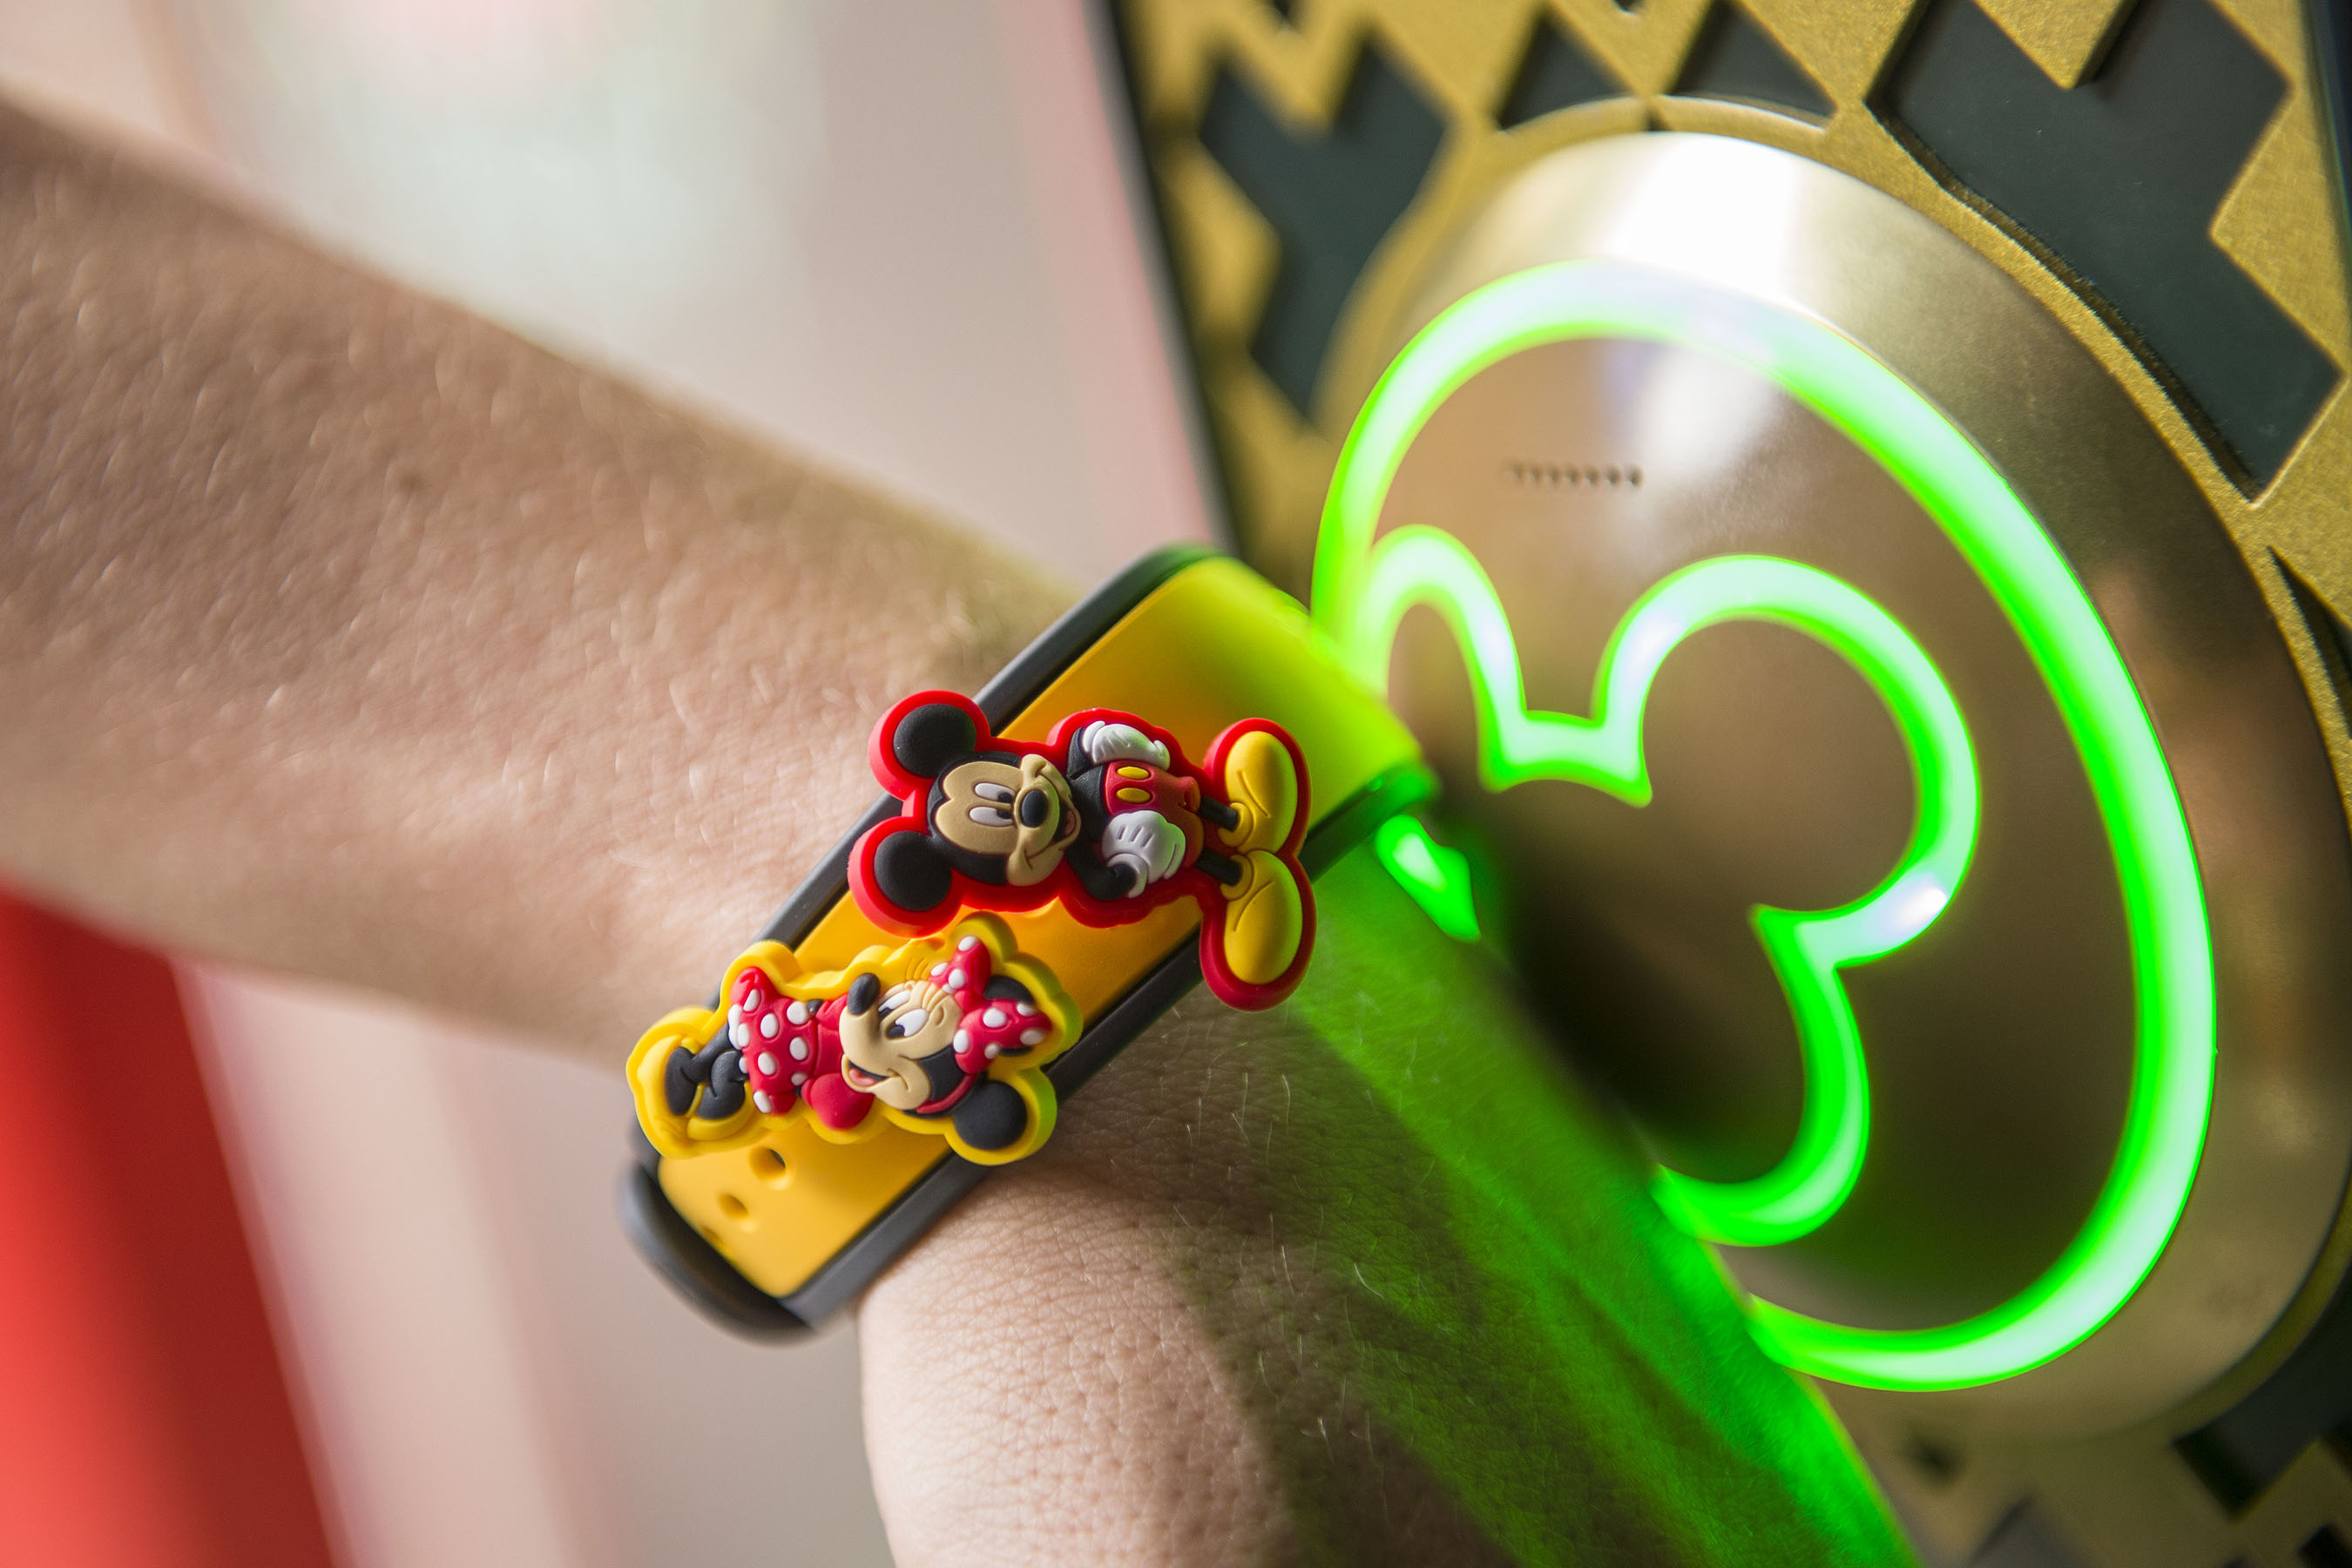 Policía confirmó que fue una falsa información robo del brazalete de “Disney MagicBand”